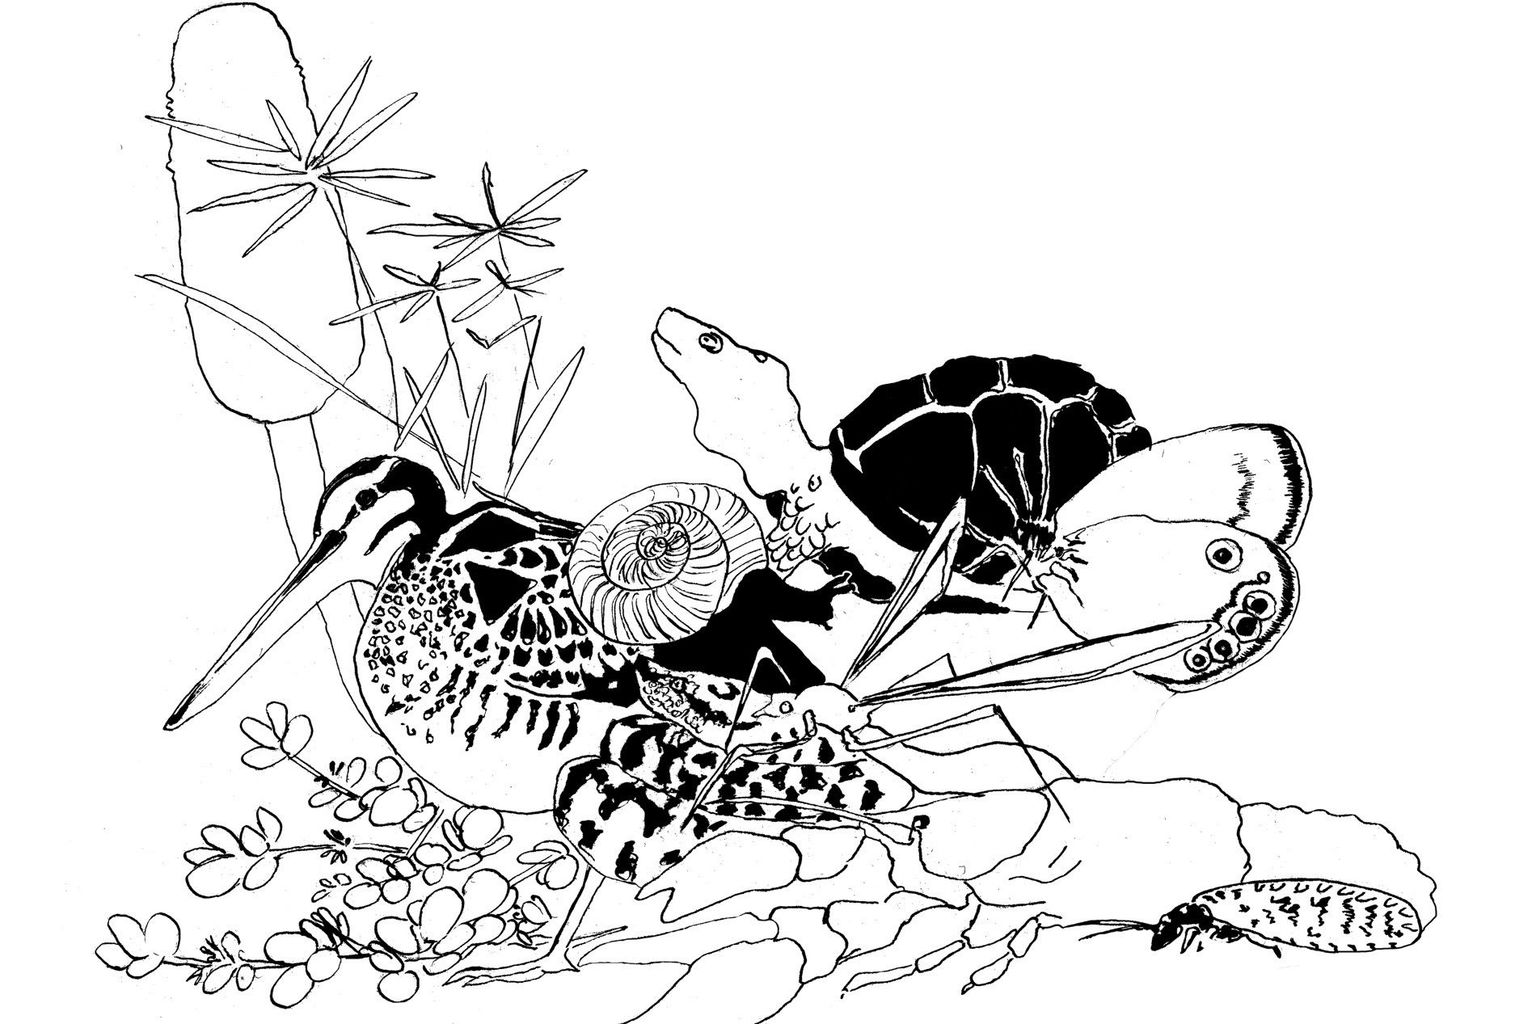 Illustration Biodiversität schwarzweiss Ausschnitt 1